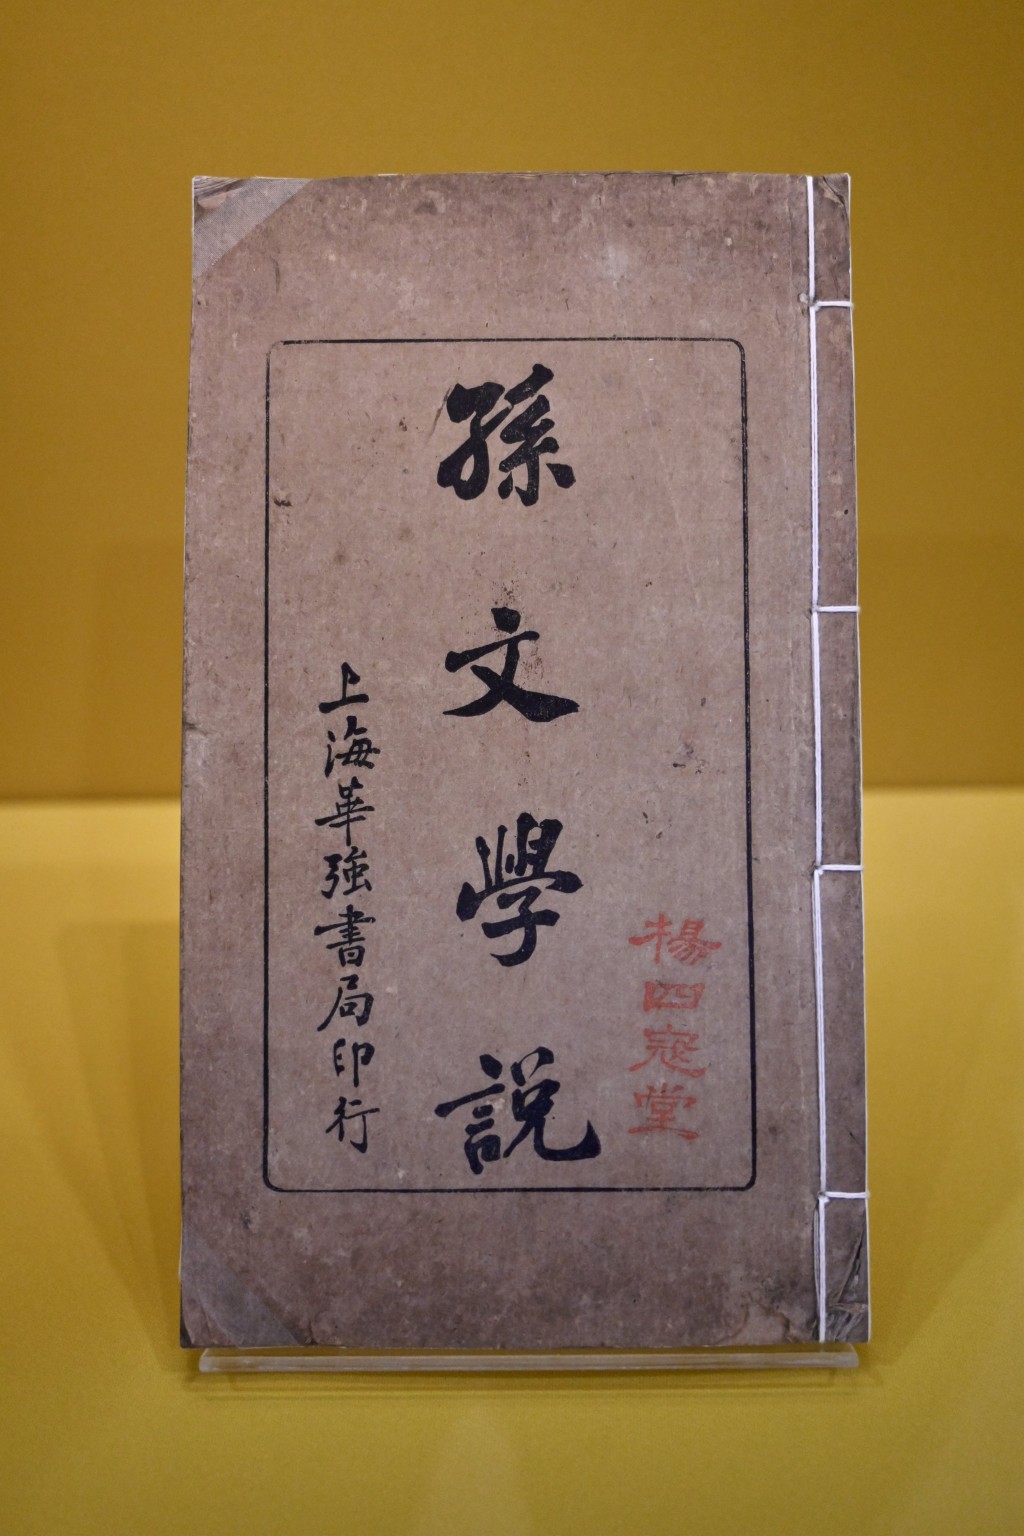 重点展品包括1919年刊行、封面钤印「杨四寇堂」的《孙文学说》（复制品）及杨鹤龄手书「天下为公」横幅（复制品）等。